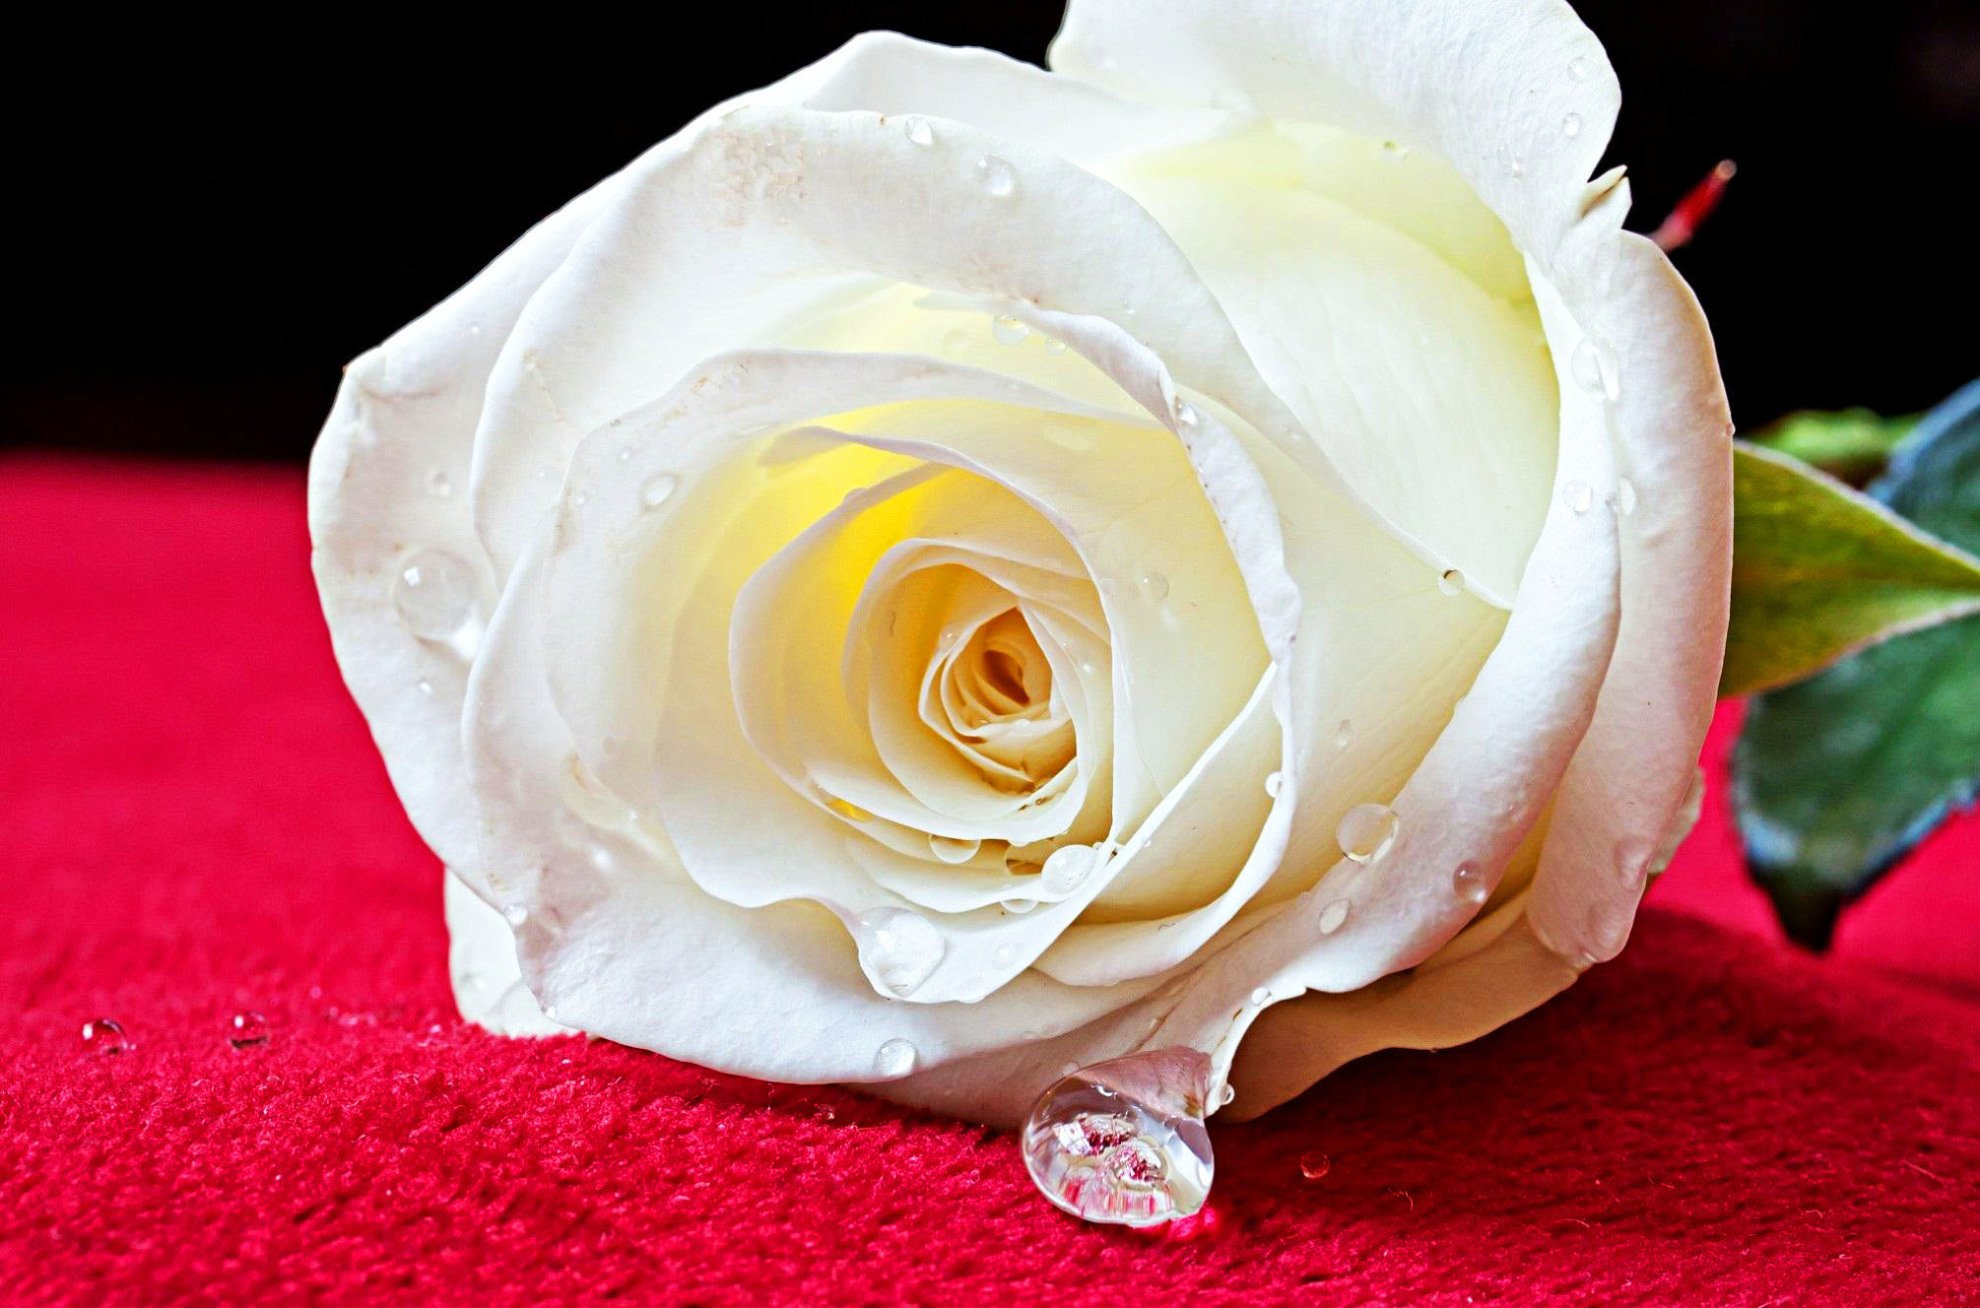 Фото белой розы в хорошем качестве